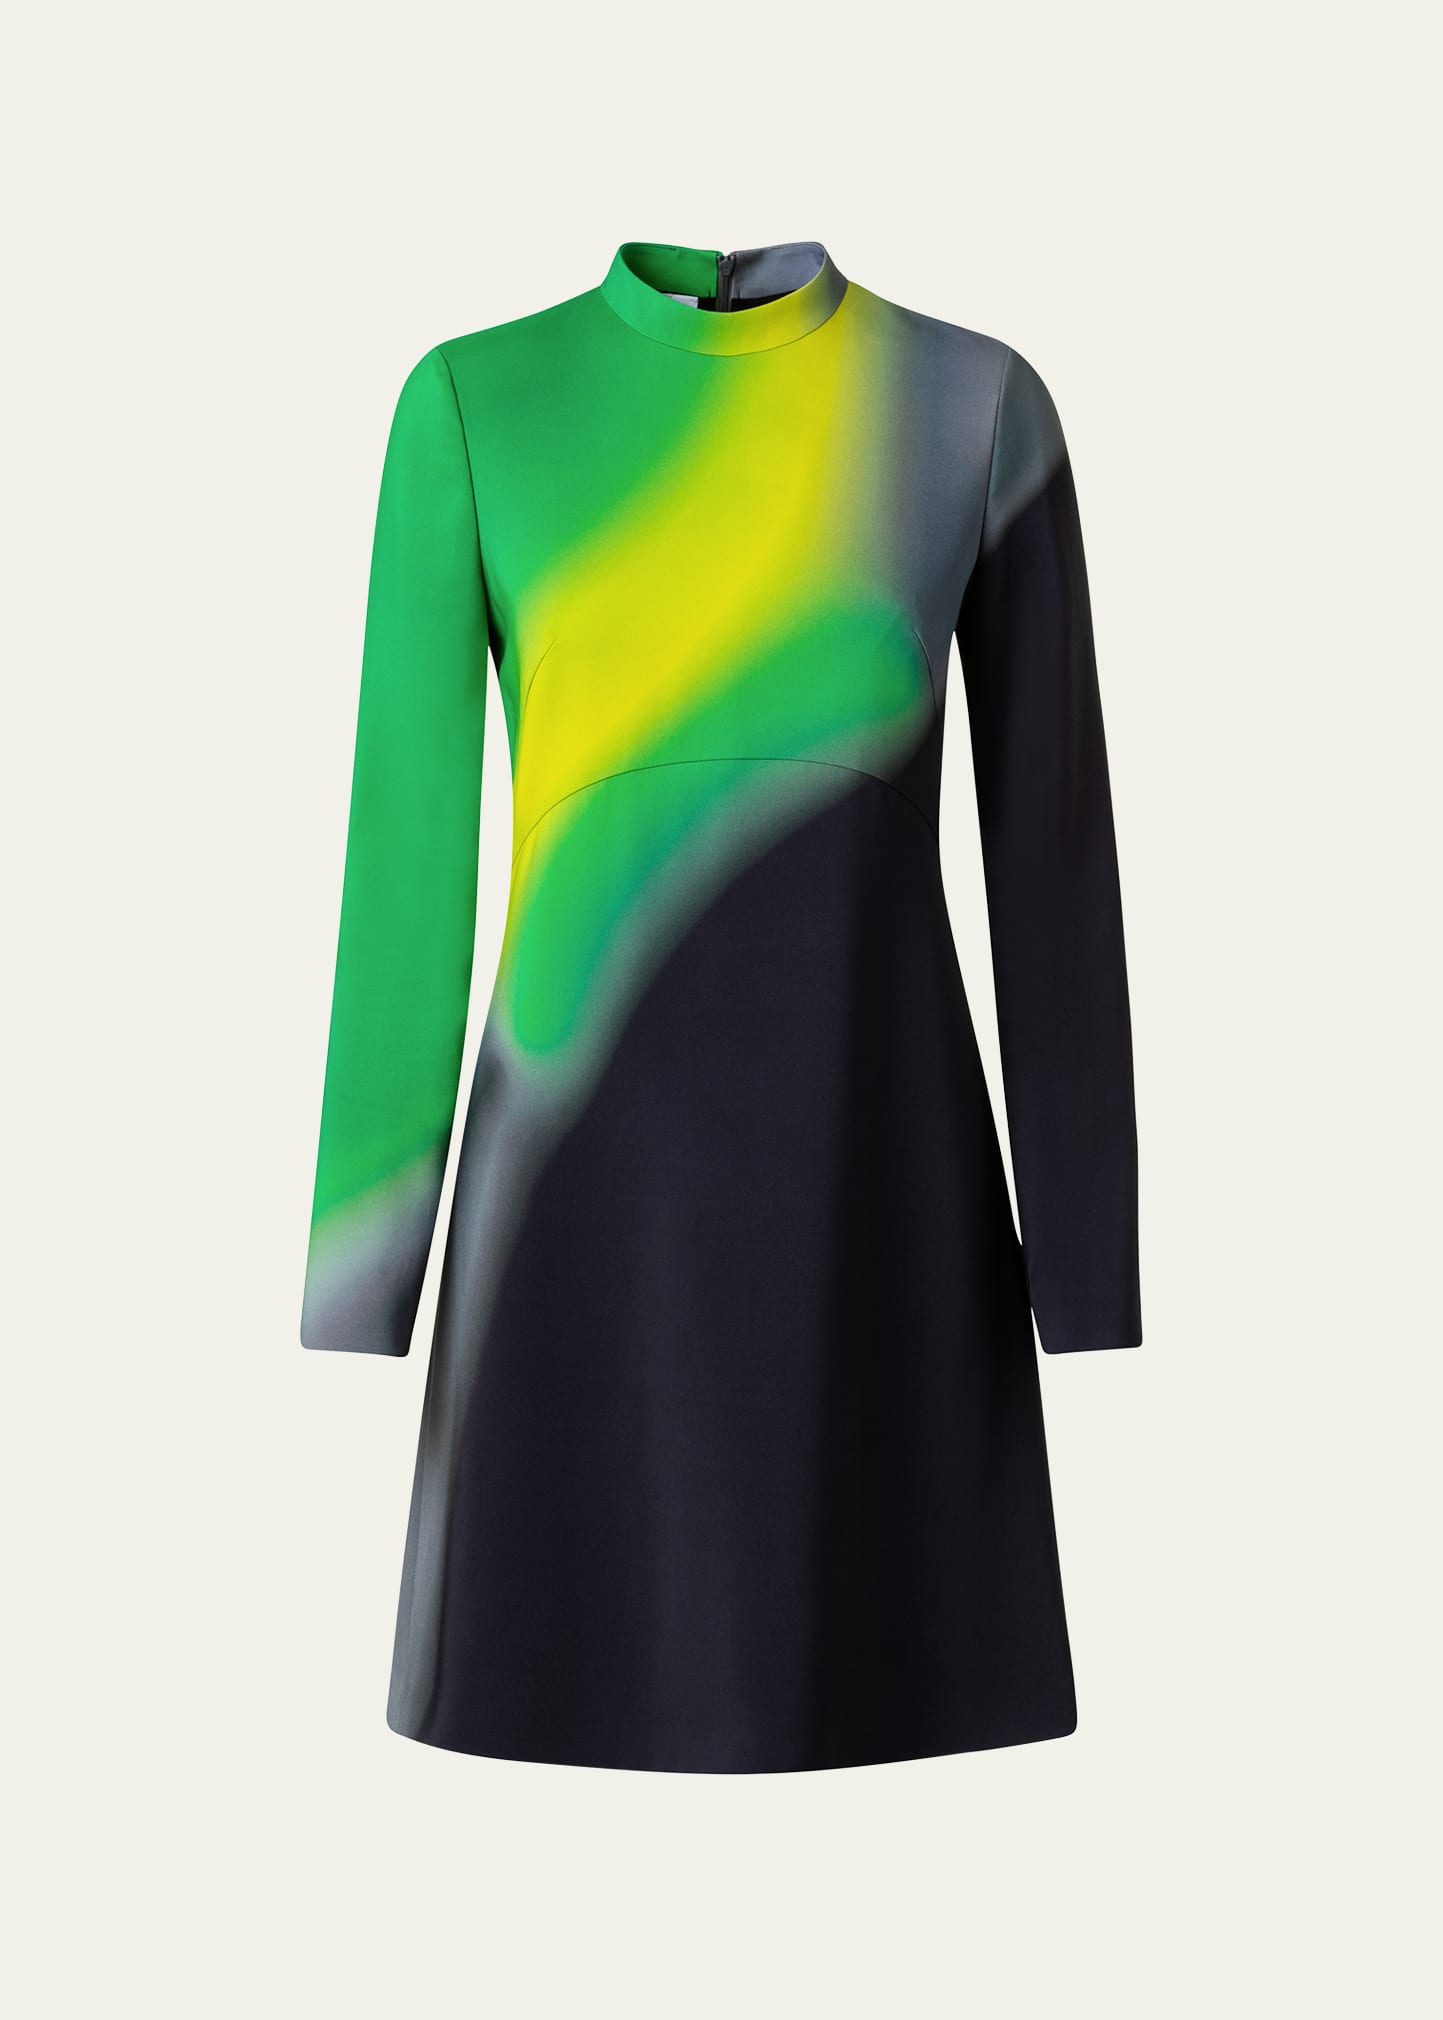 Tech Green Disco Laser Printed Short Dress